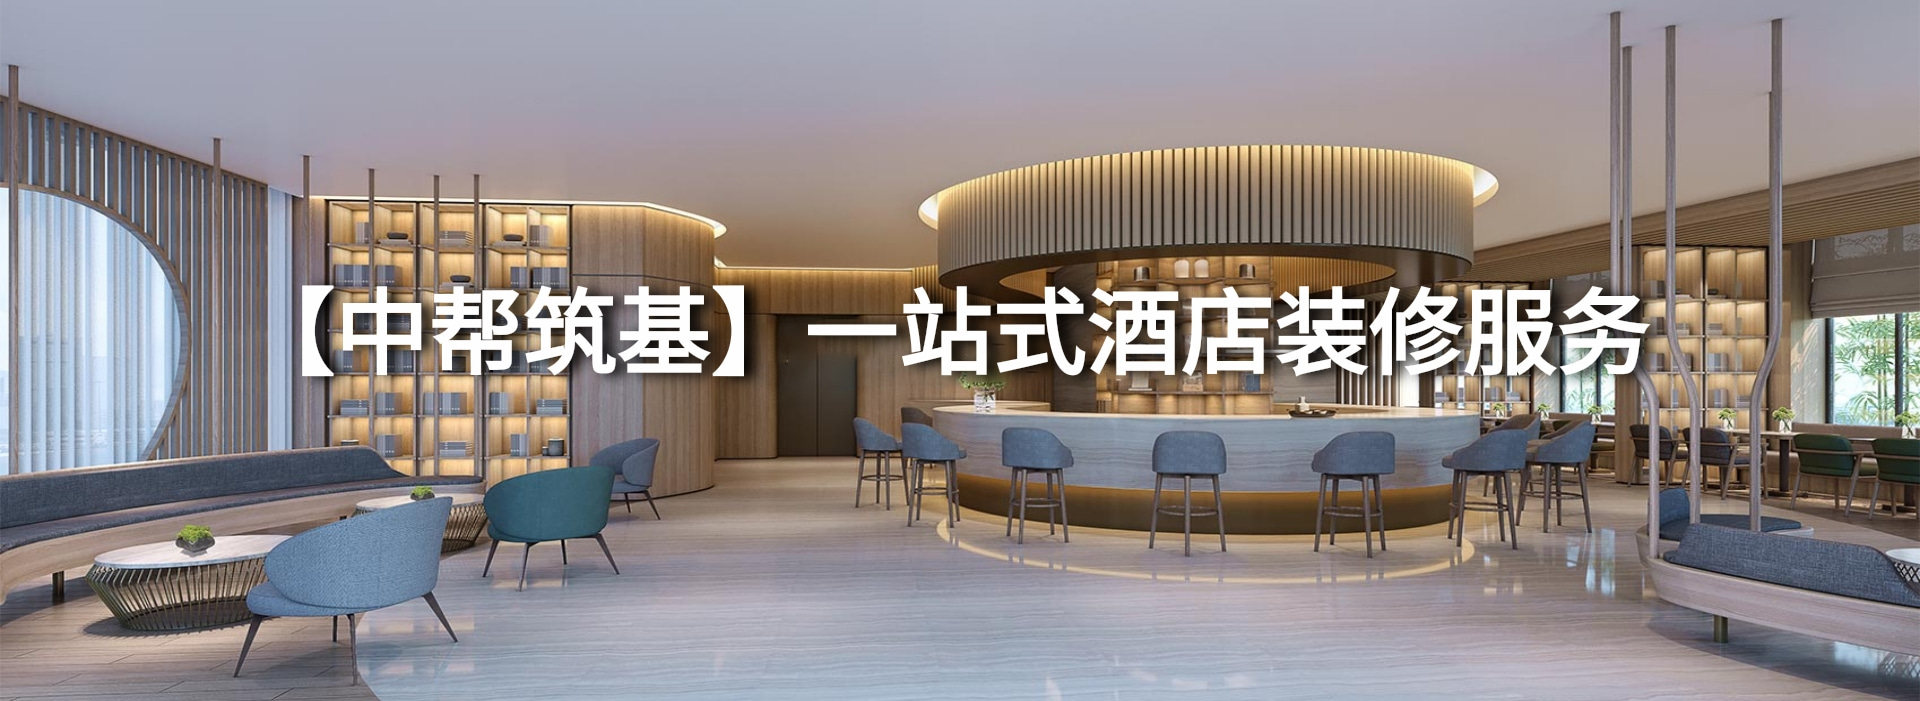 北京酒店装修装饰设计公司